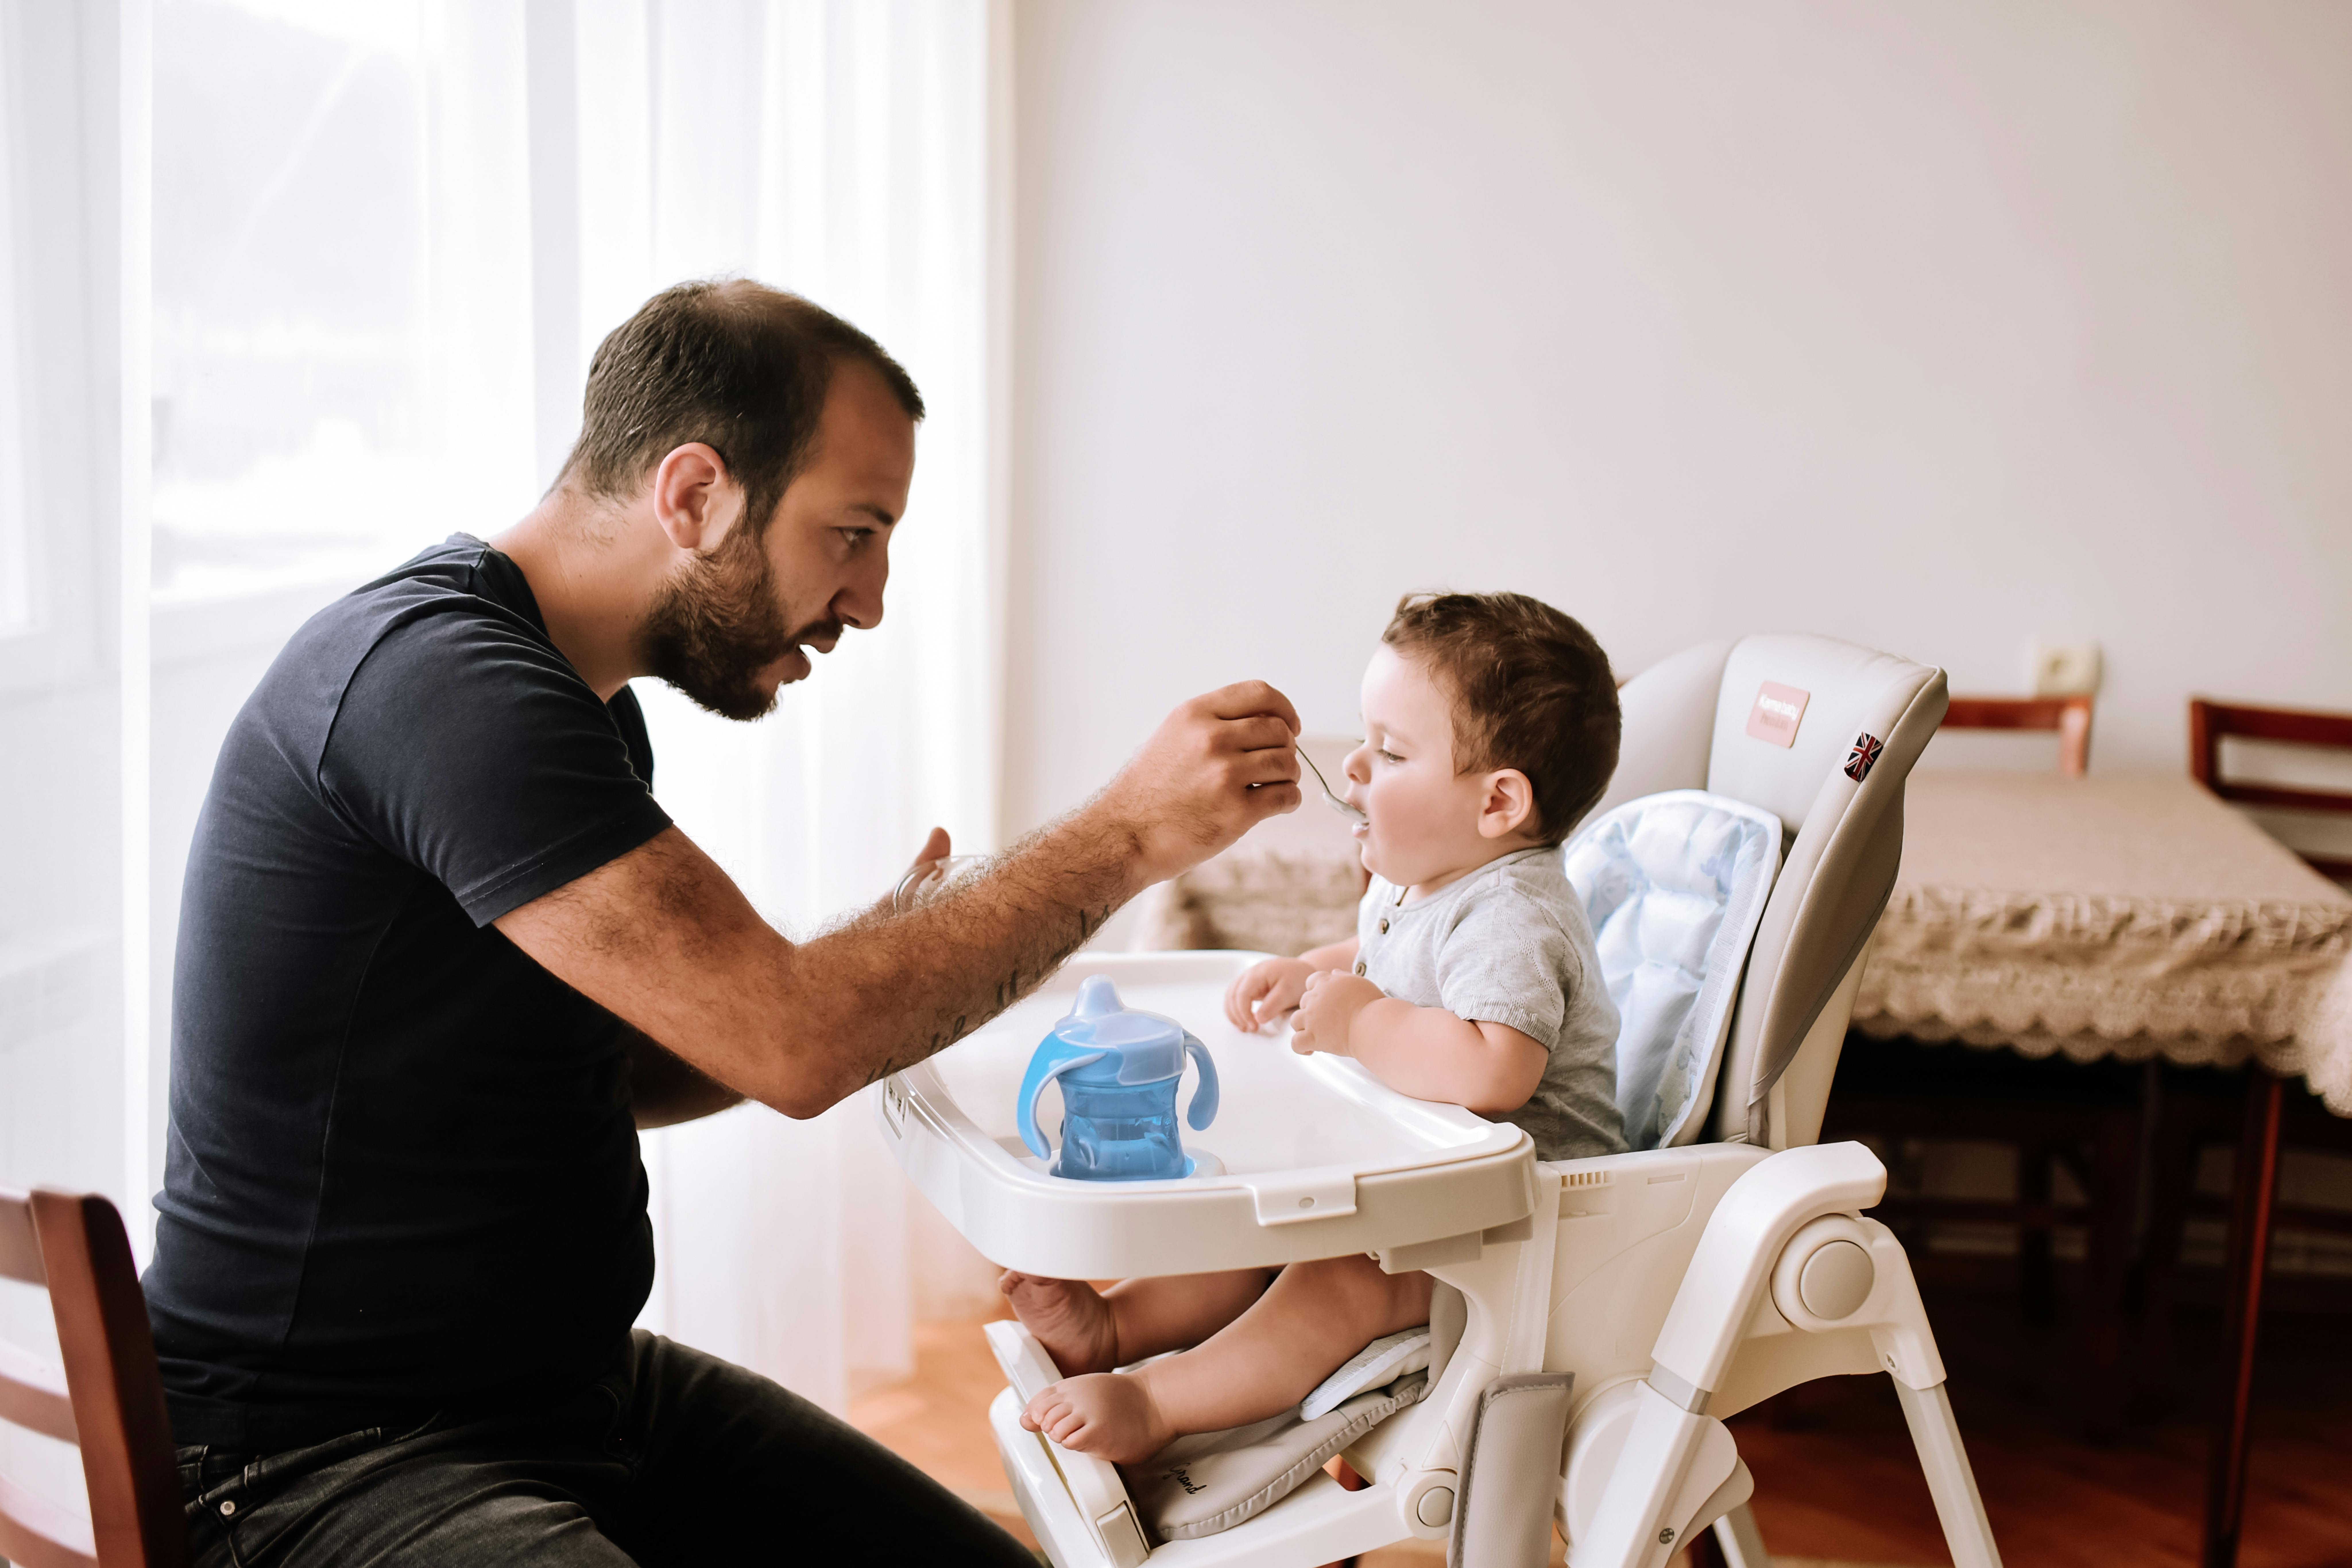 Armenia, l'ora della pappa con papà! L'UNICEF sta promuovendo il coinvolgimento dei padri nella cura dei bambini, poiché è fondamentale per lo sviluppo del cervello del bambino.